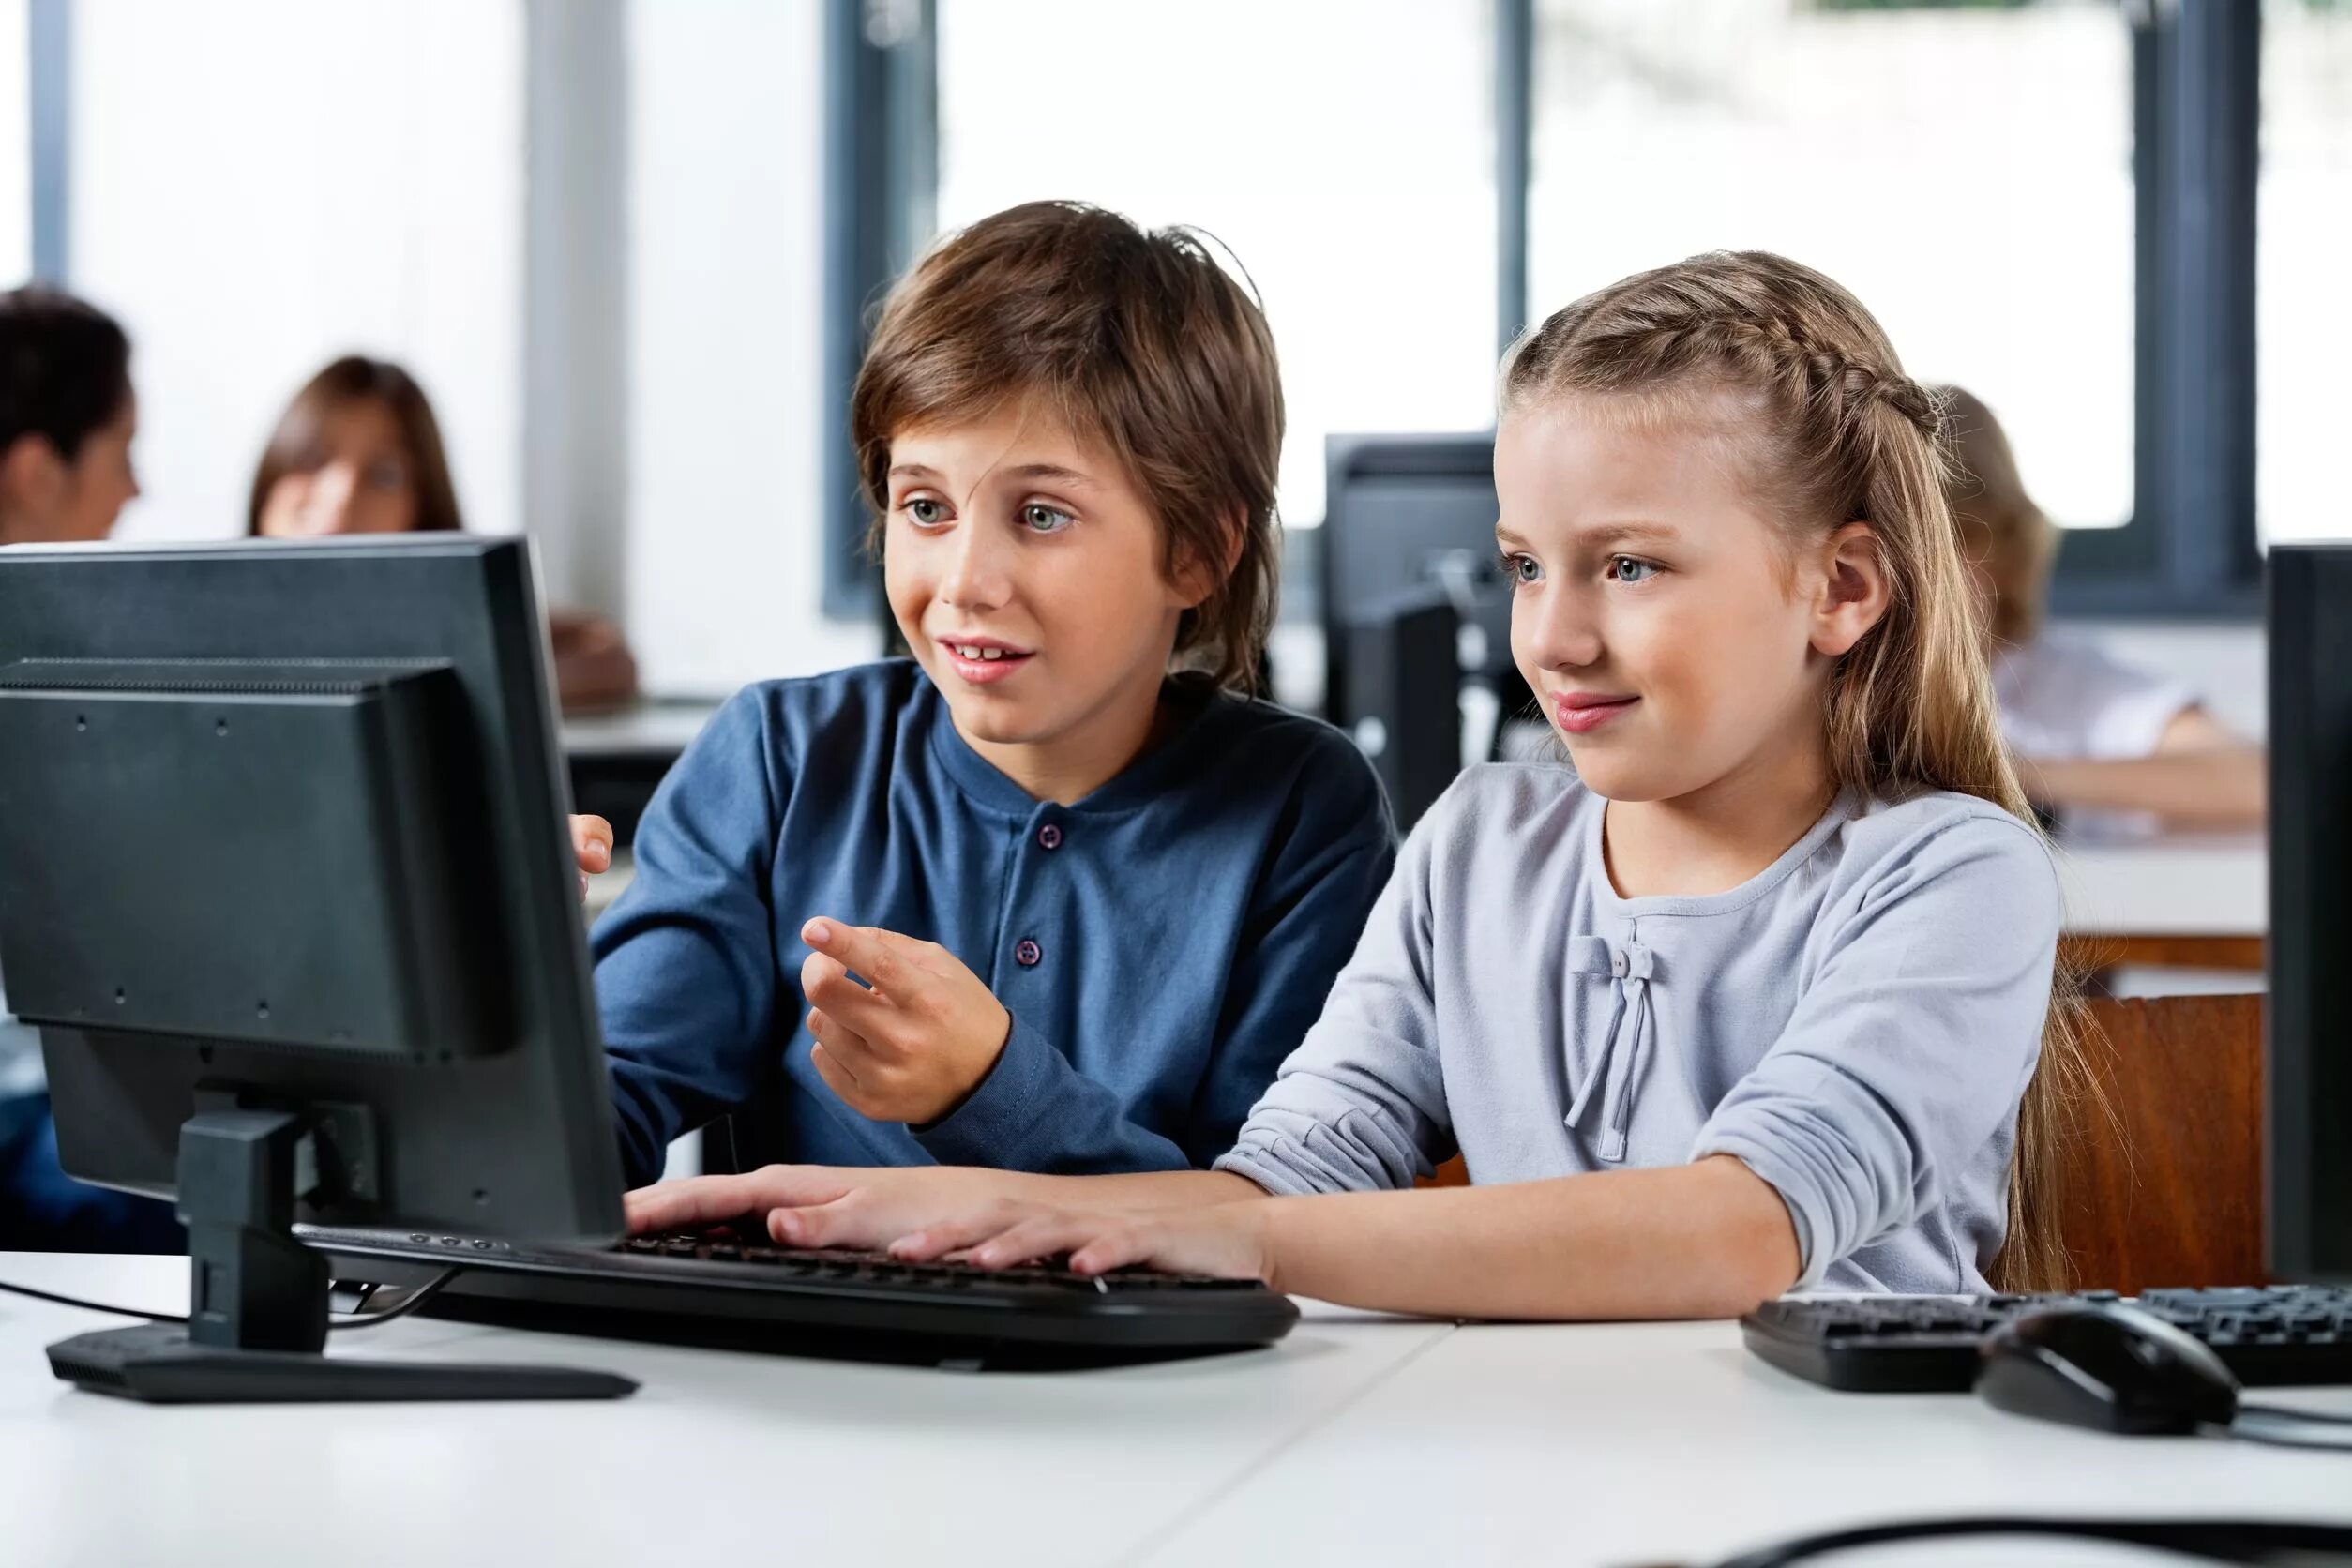 Доступ в интернет в школах. Компьютер для детей. Компьютер для школьника. Ребенок за компьютером. Школьник в интернете.